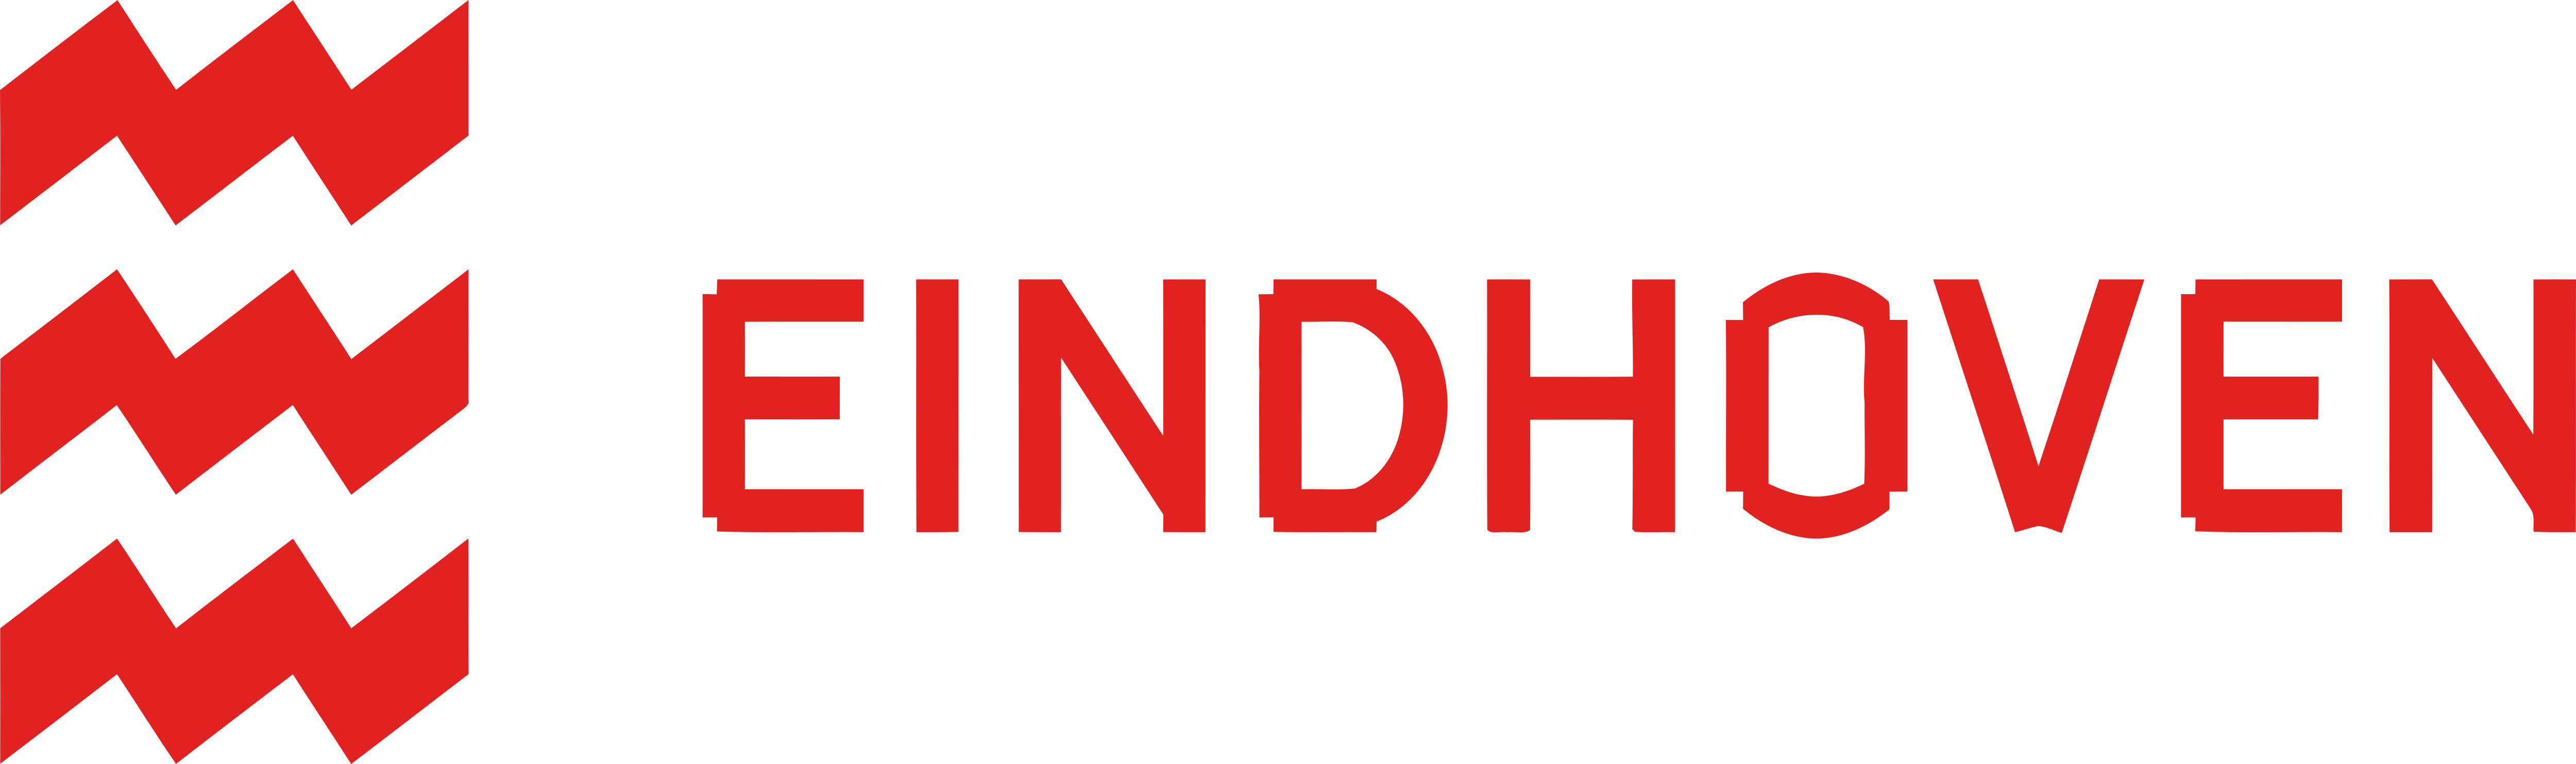 Eindhoven_Logo